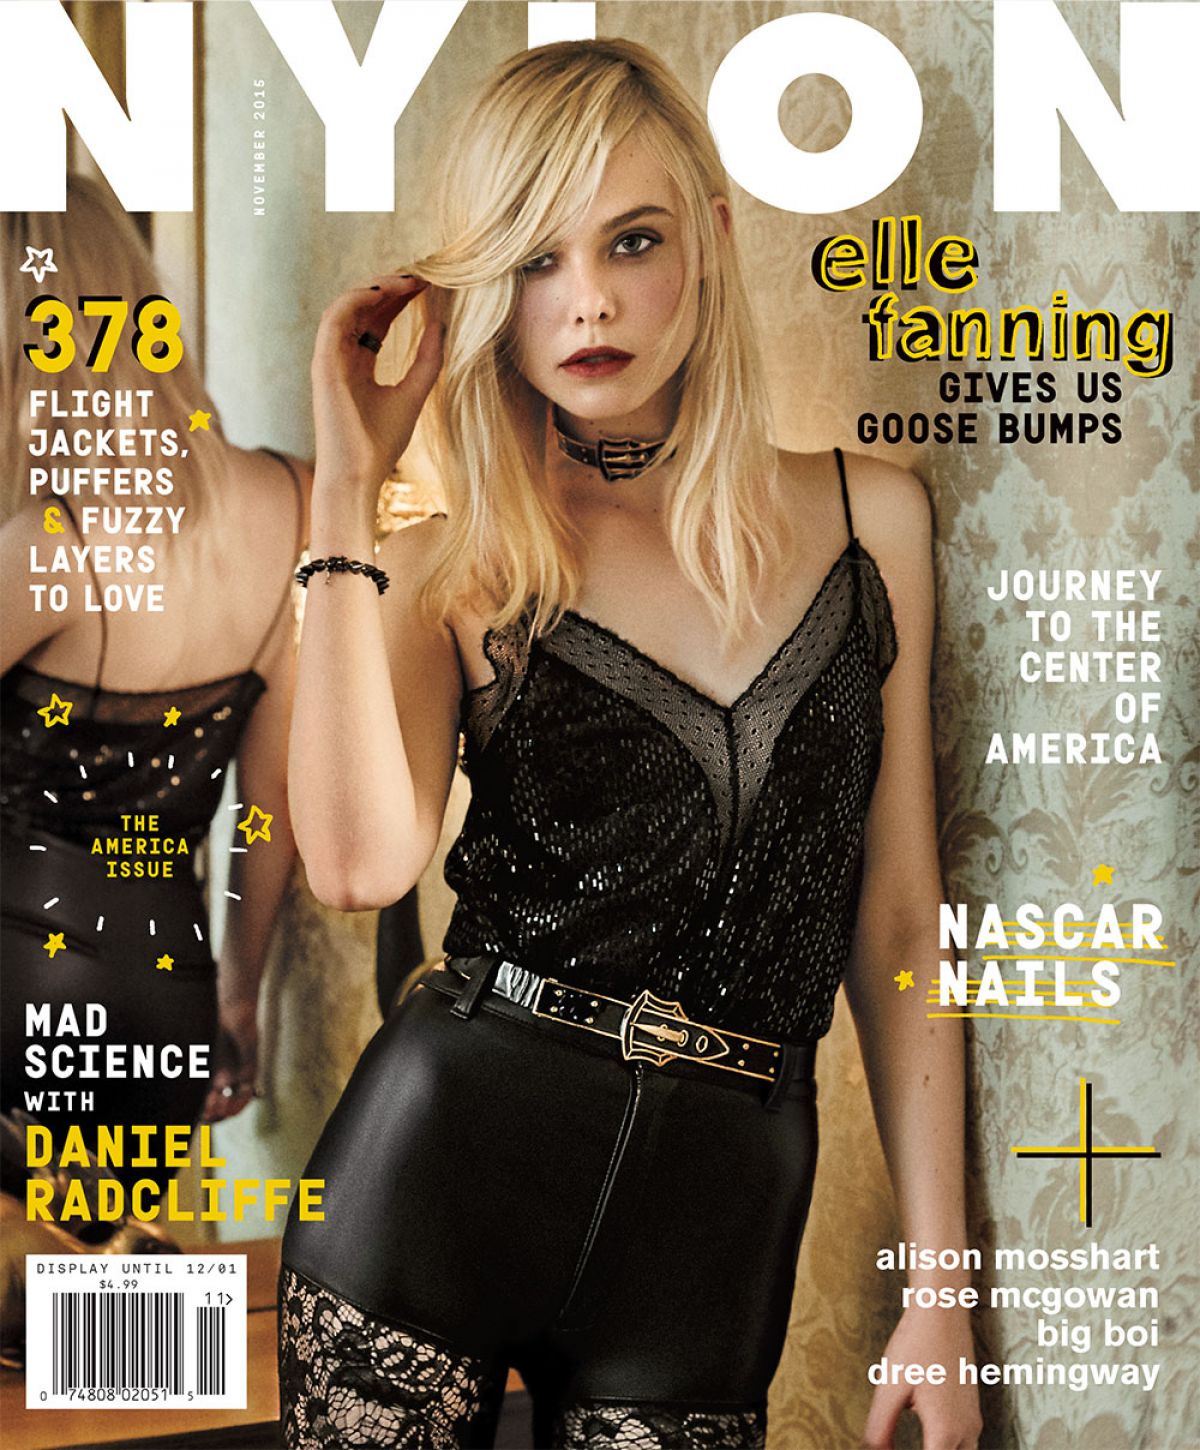 ELLE FANNING in Nylon Magazine, November 2015 Issue